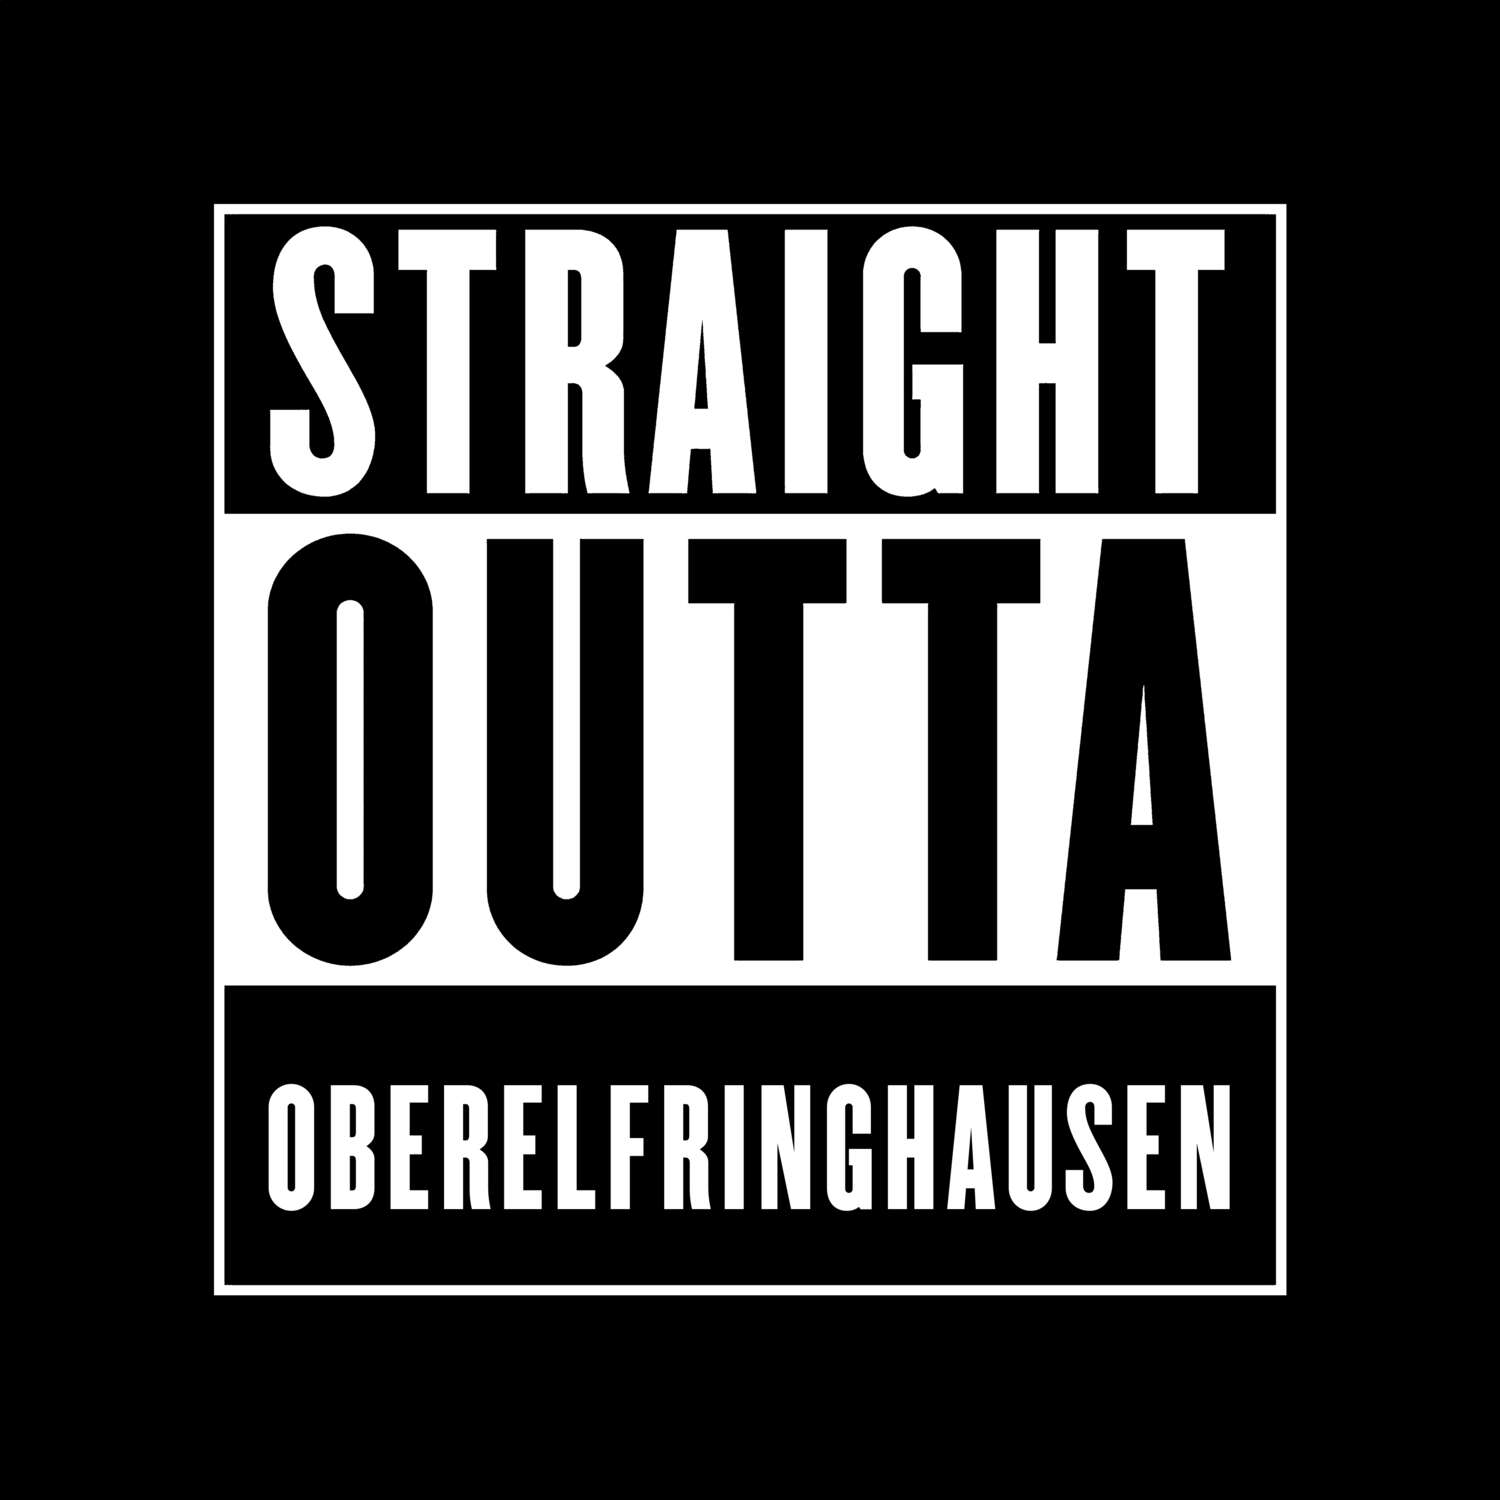 Oberelfringhausen T-Shirt »Straight Outta«